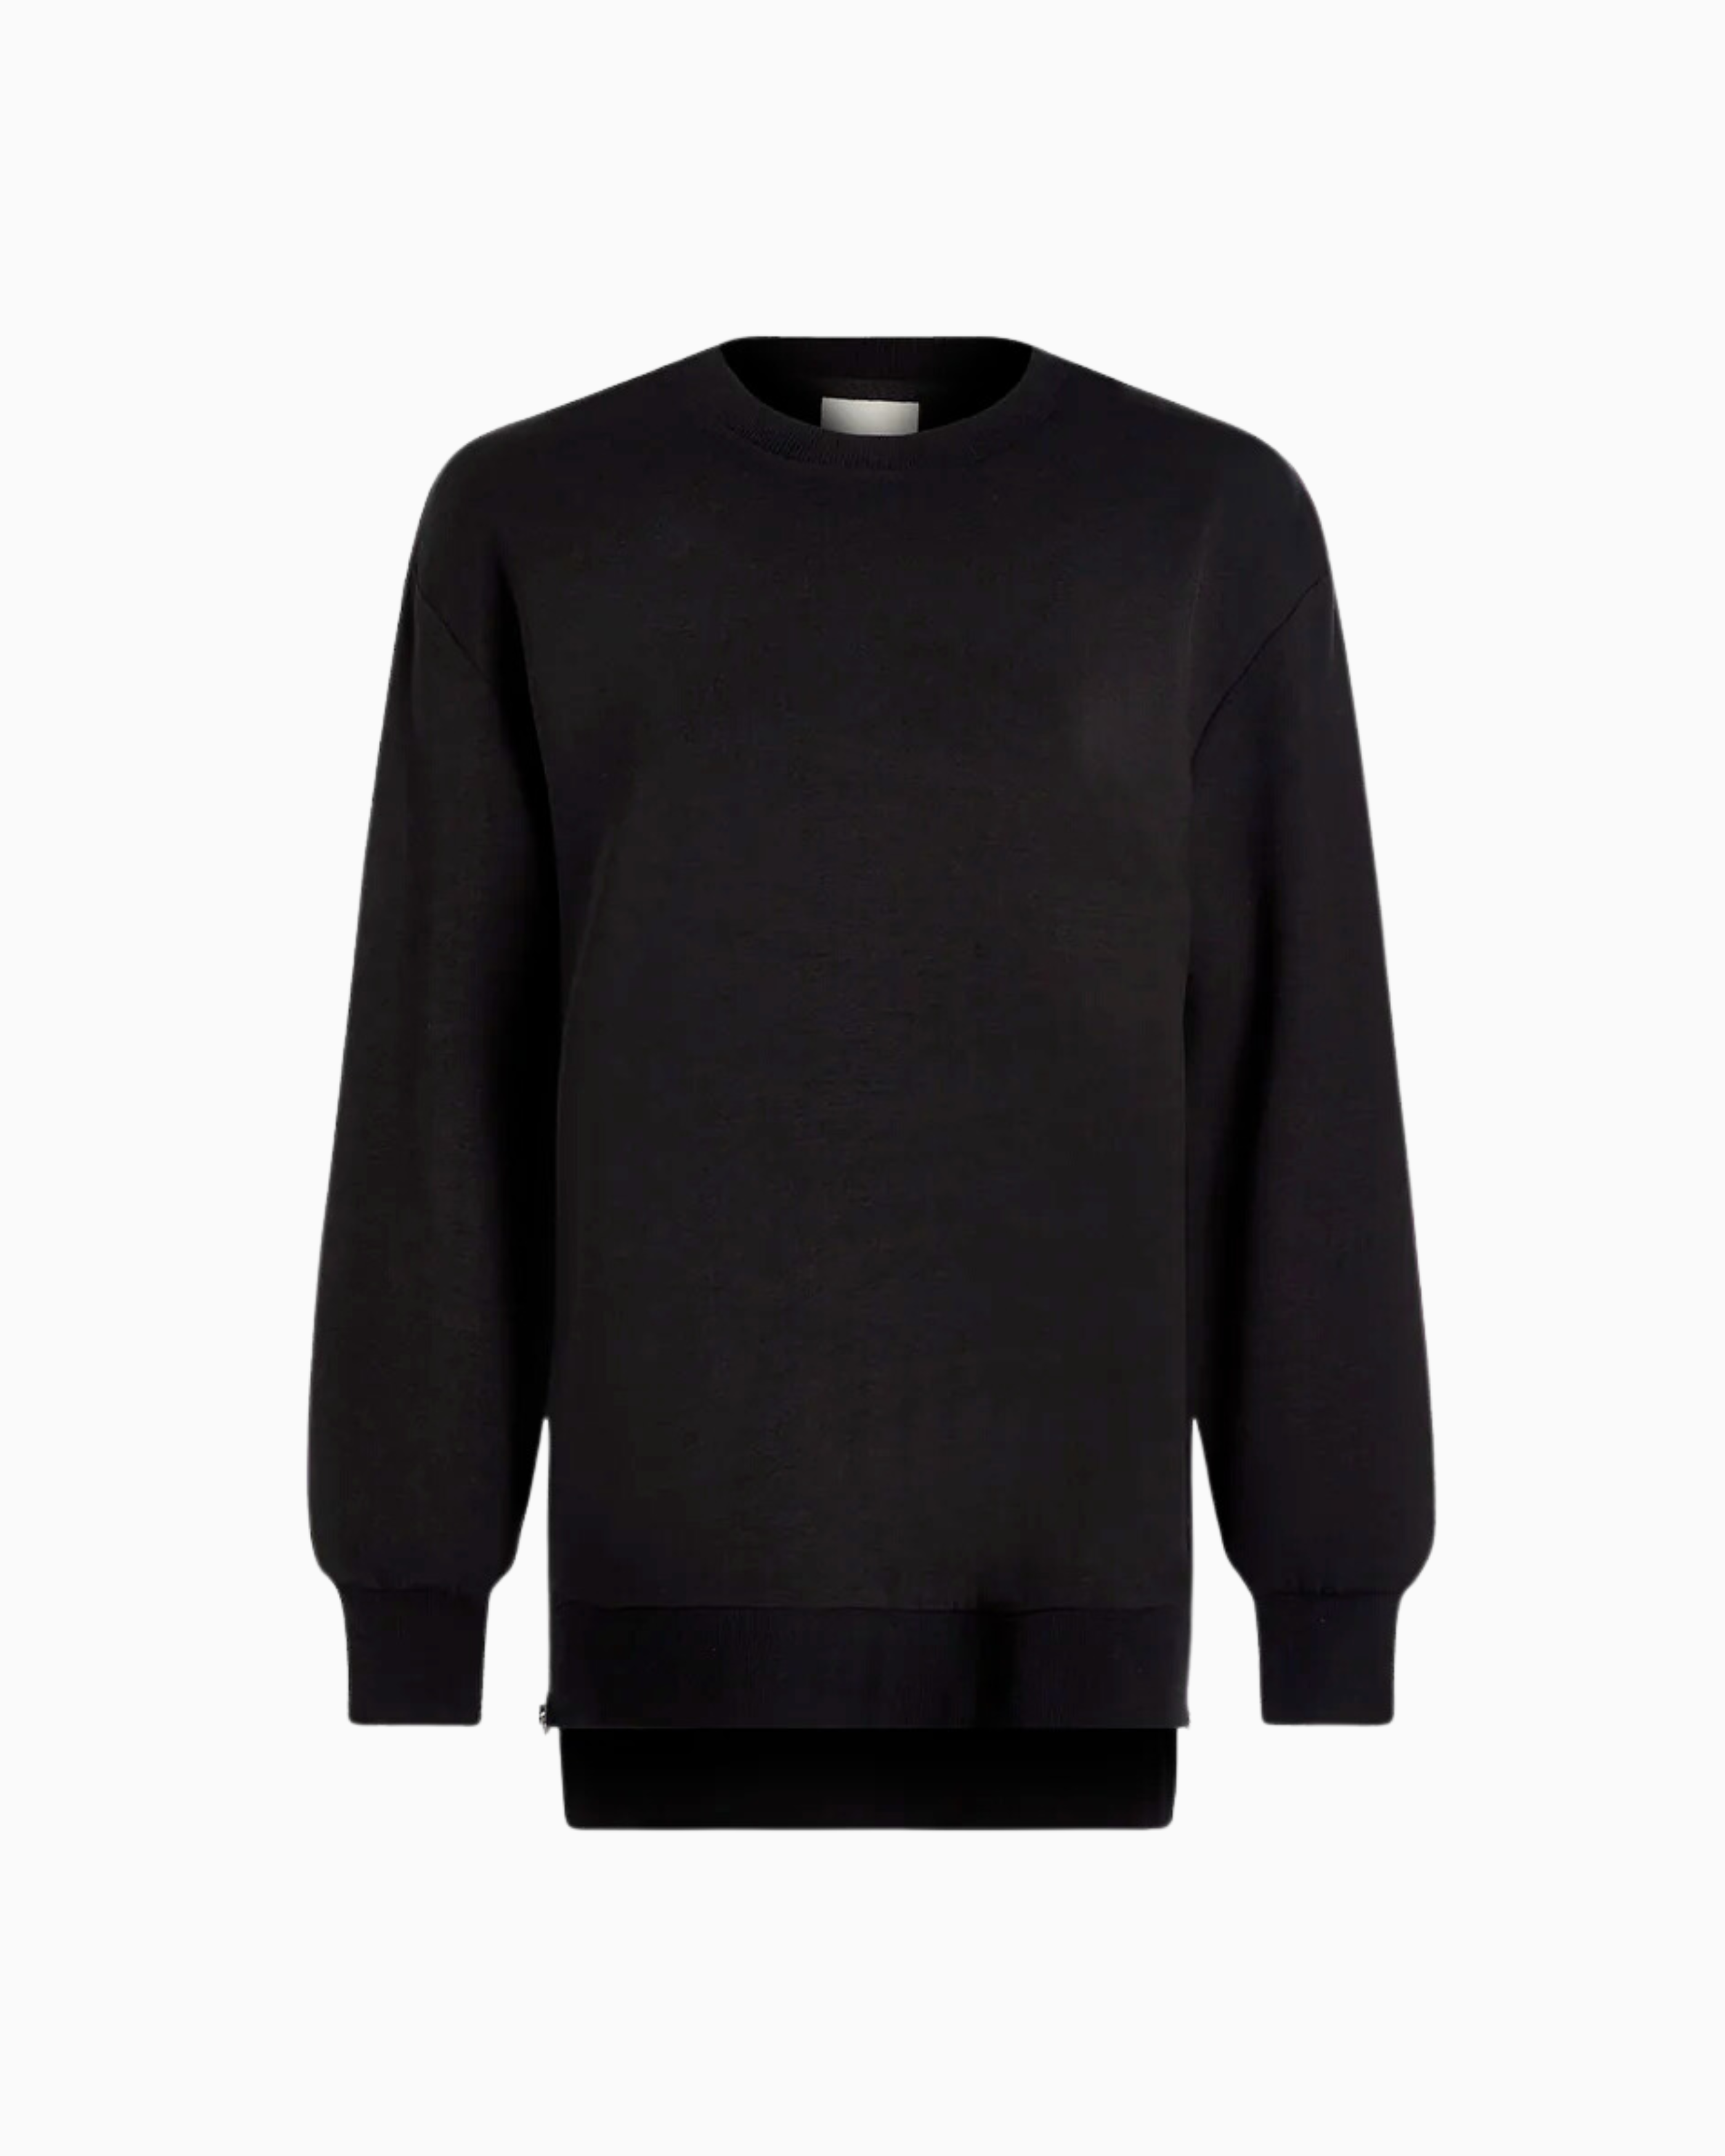 Varley Charter Sweatshirt in Black